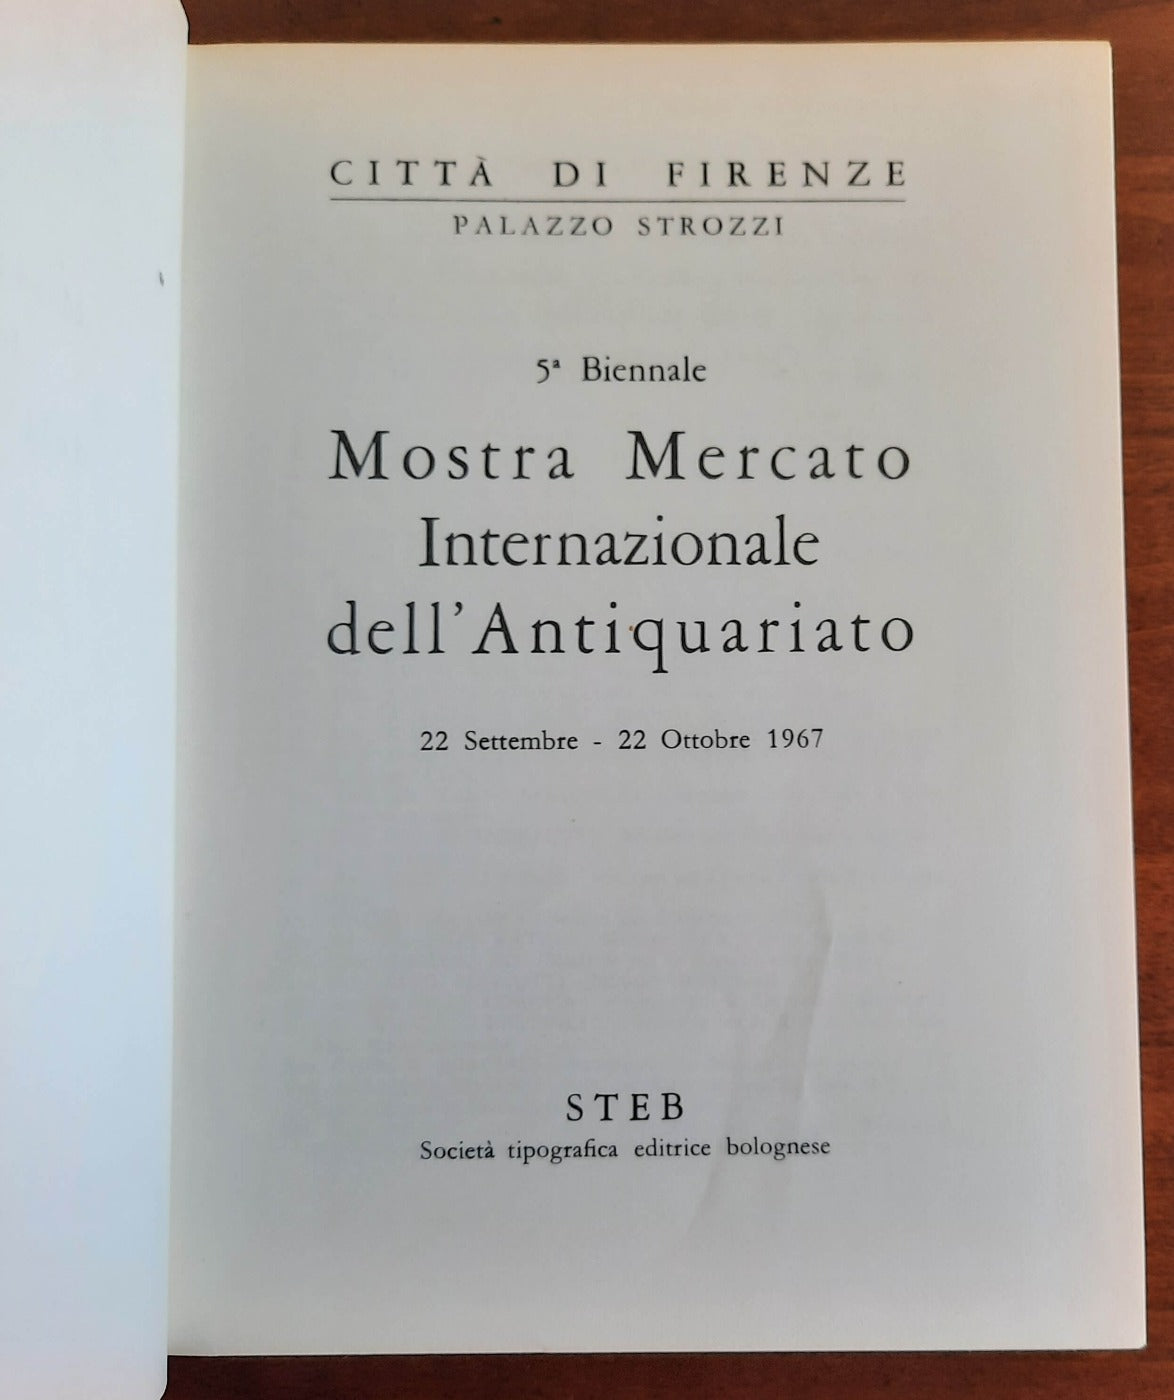 5 Biennale Mostra Mercato Internazionale dell’ Antiquariato - Palazzo Strozzi - 1967